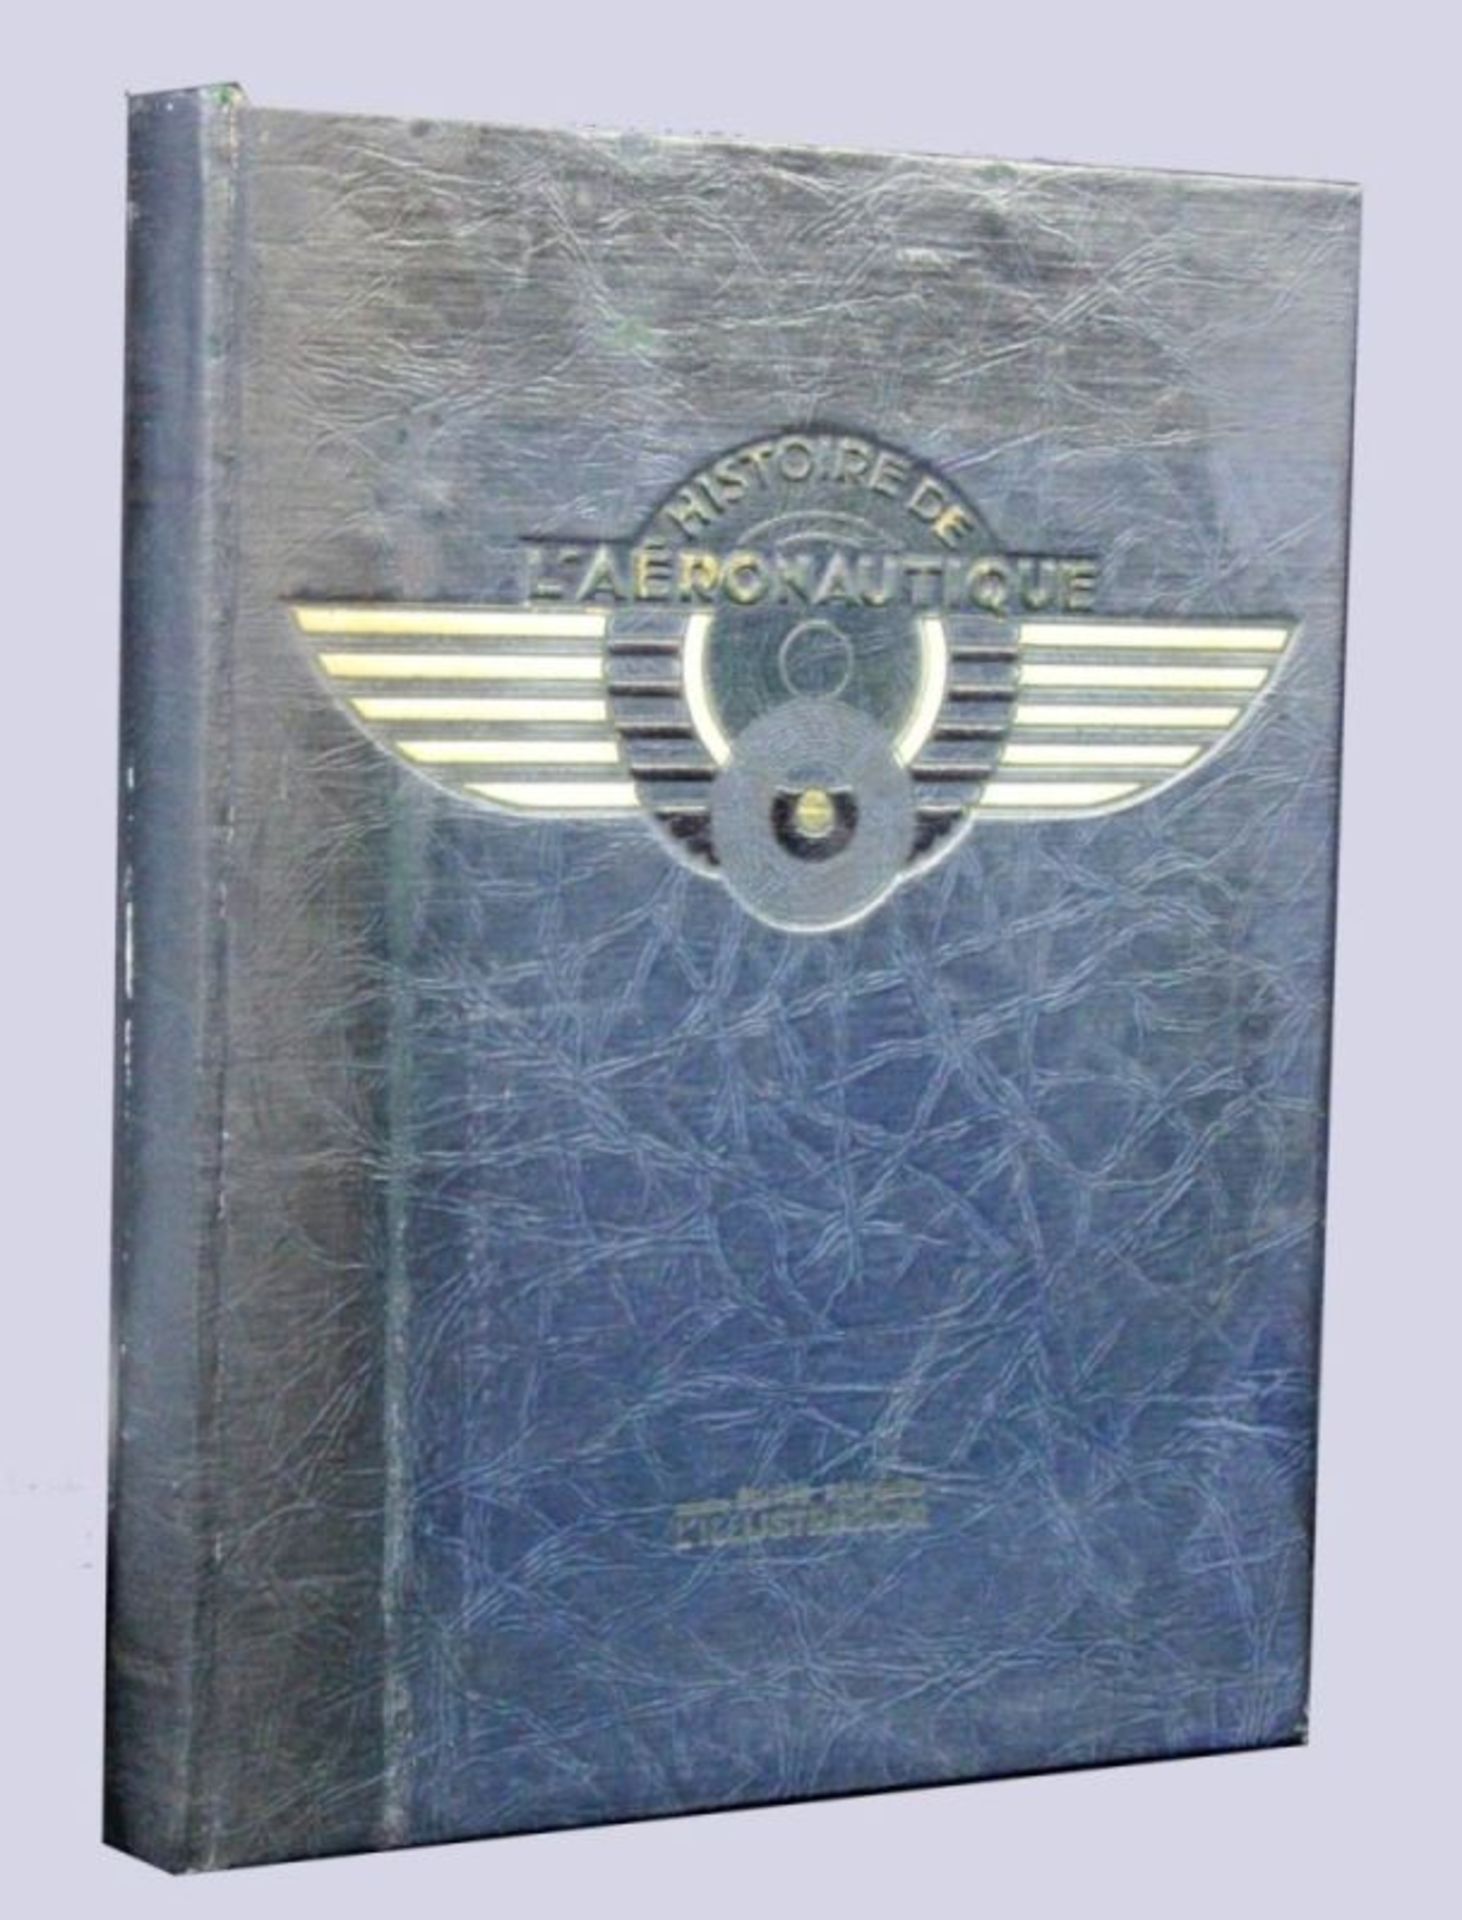 L'HISTOIRE DE L'AERONAUTIQUEParis 1932 Lexikon zur Luftfahrtgeschichte. Mit zahlreichen Abbildungen. - Image 2 of 2